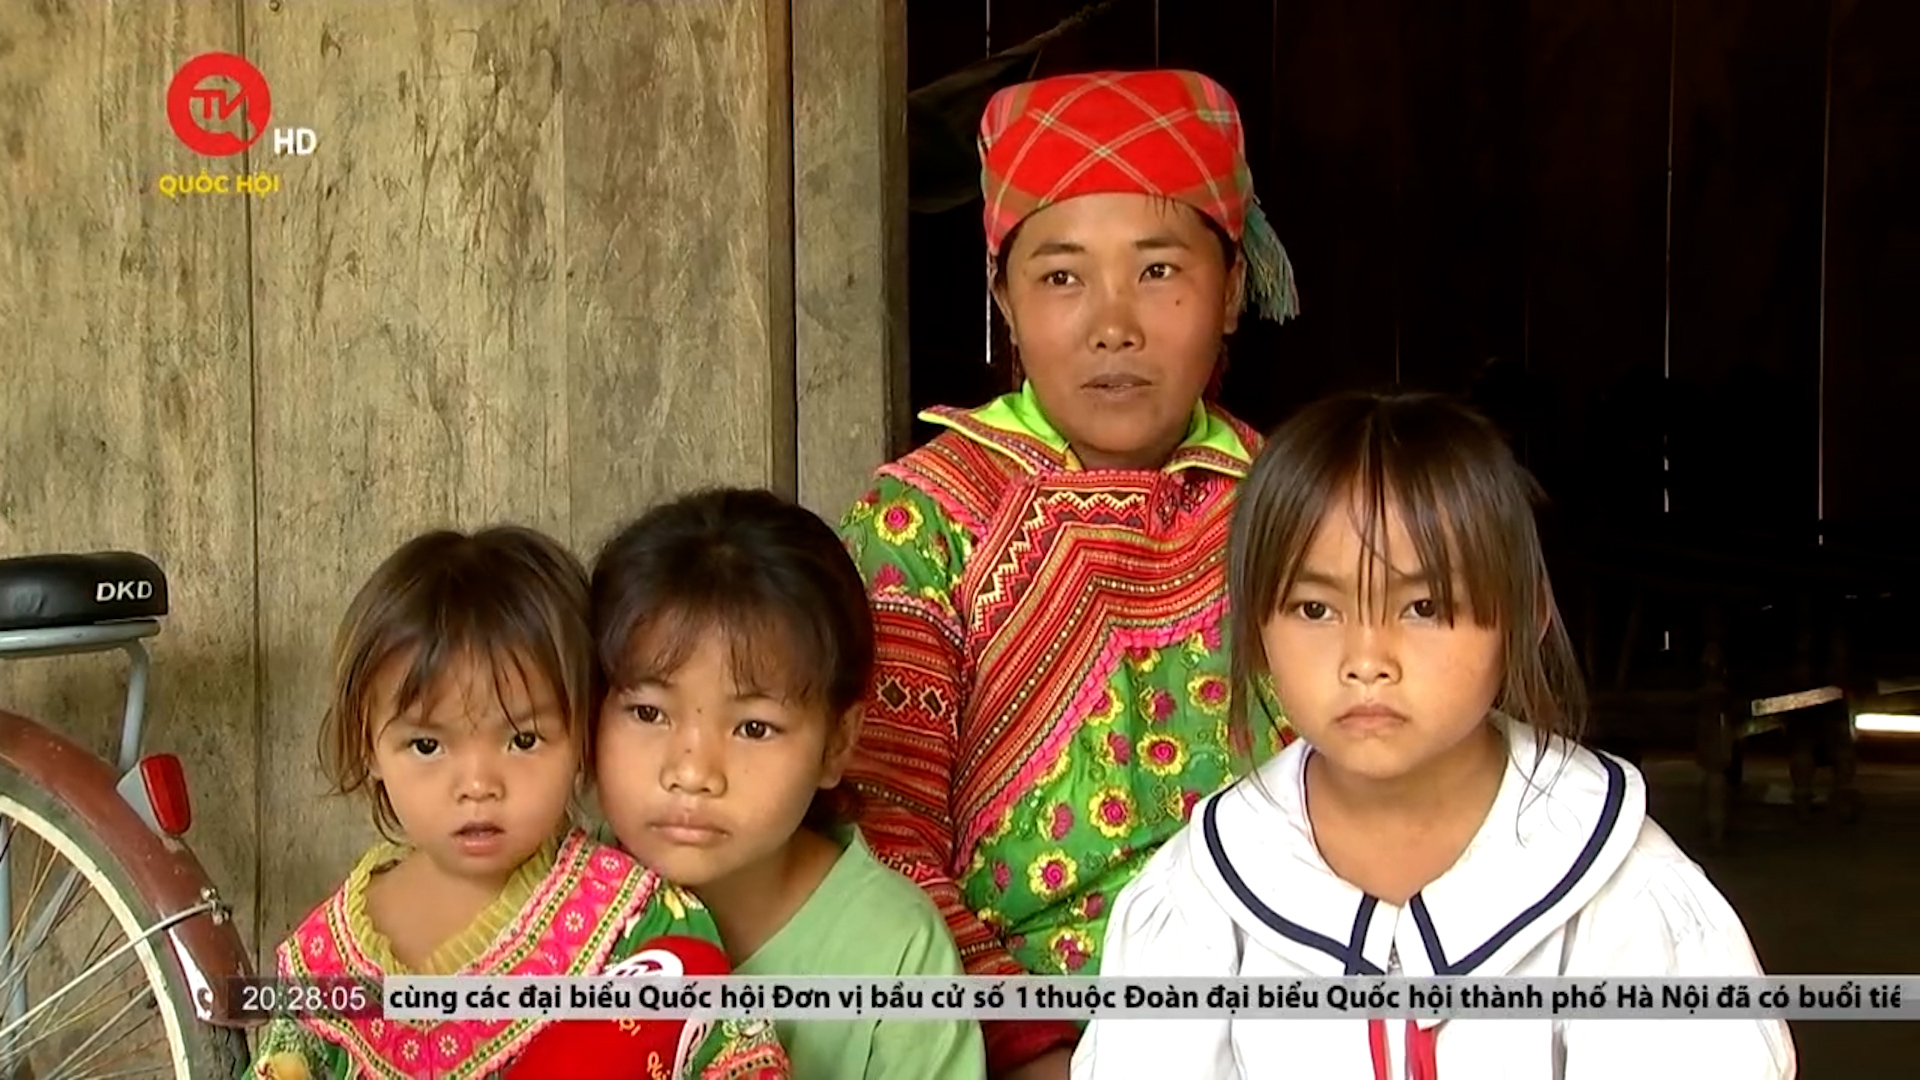 Chuyện đông con của đồng bào Mông: Cộng tác viên dân số "tuyên truyền người ta đẻ ít mà mình lại đông con"